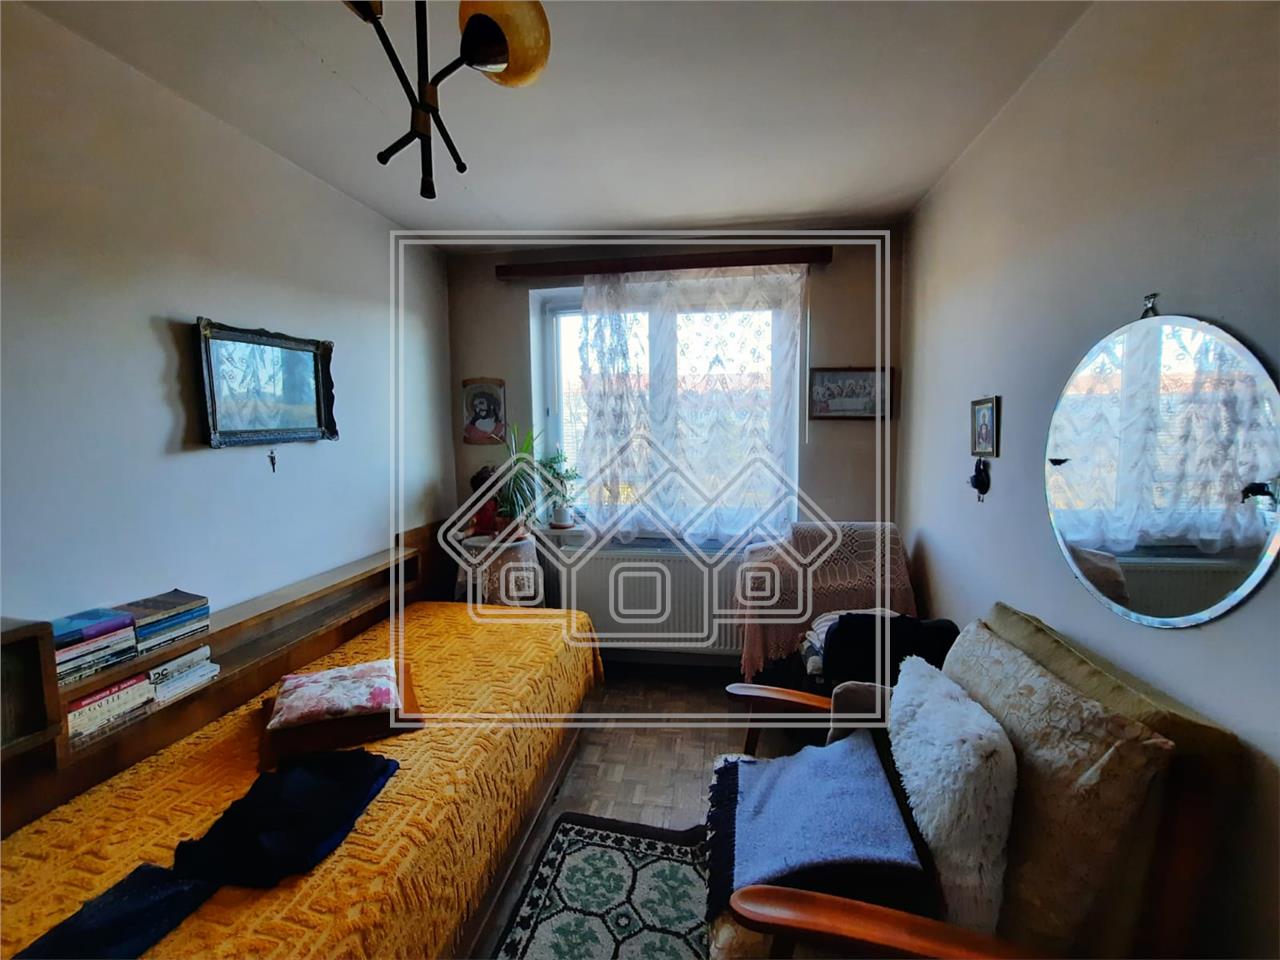 Apartament de vanzare in Sibiu - 2 camere si balcon - Terezian